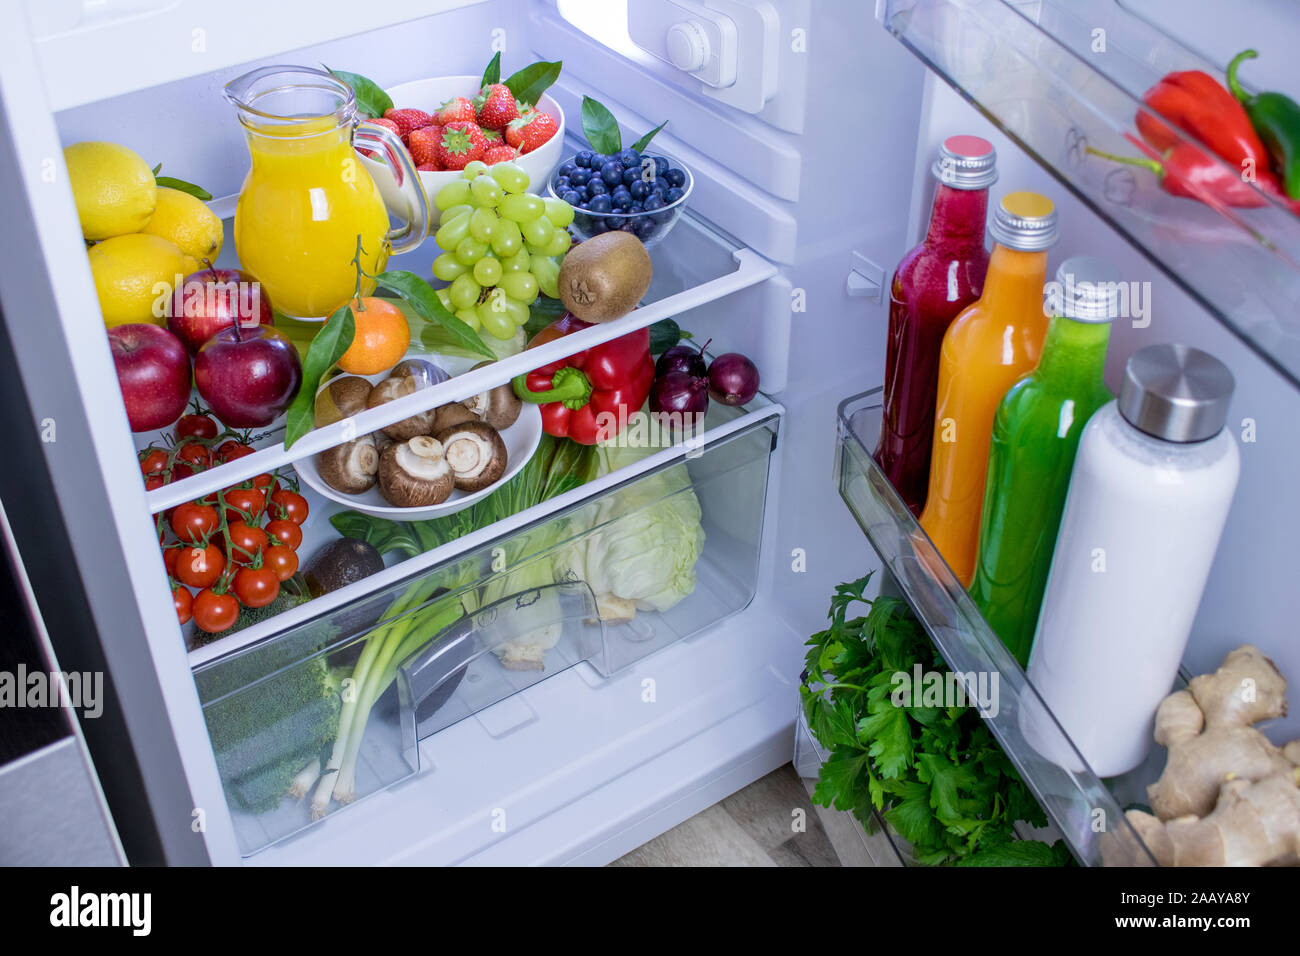 Fotografia di cibo di un splendidamente decorate frigo con prodotti freschi e sani, vegan o impianto basato articoli alimentari. Foto Stock